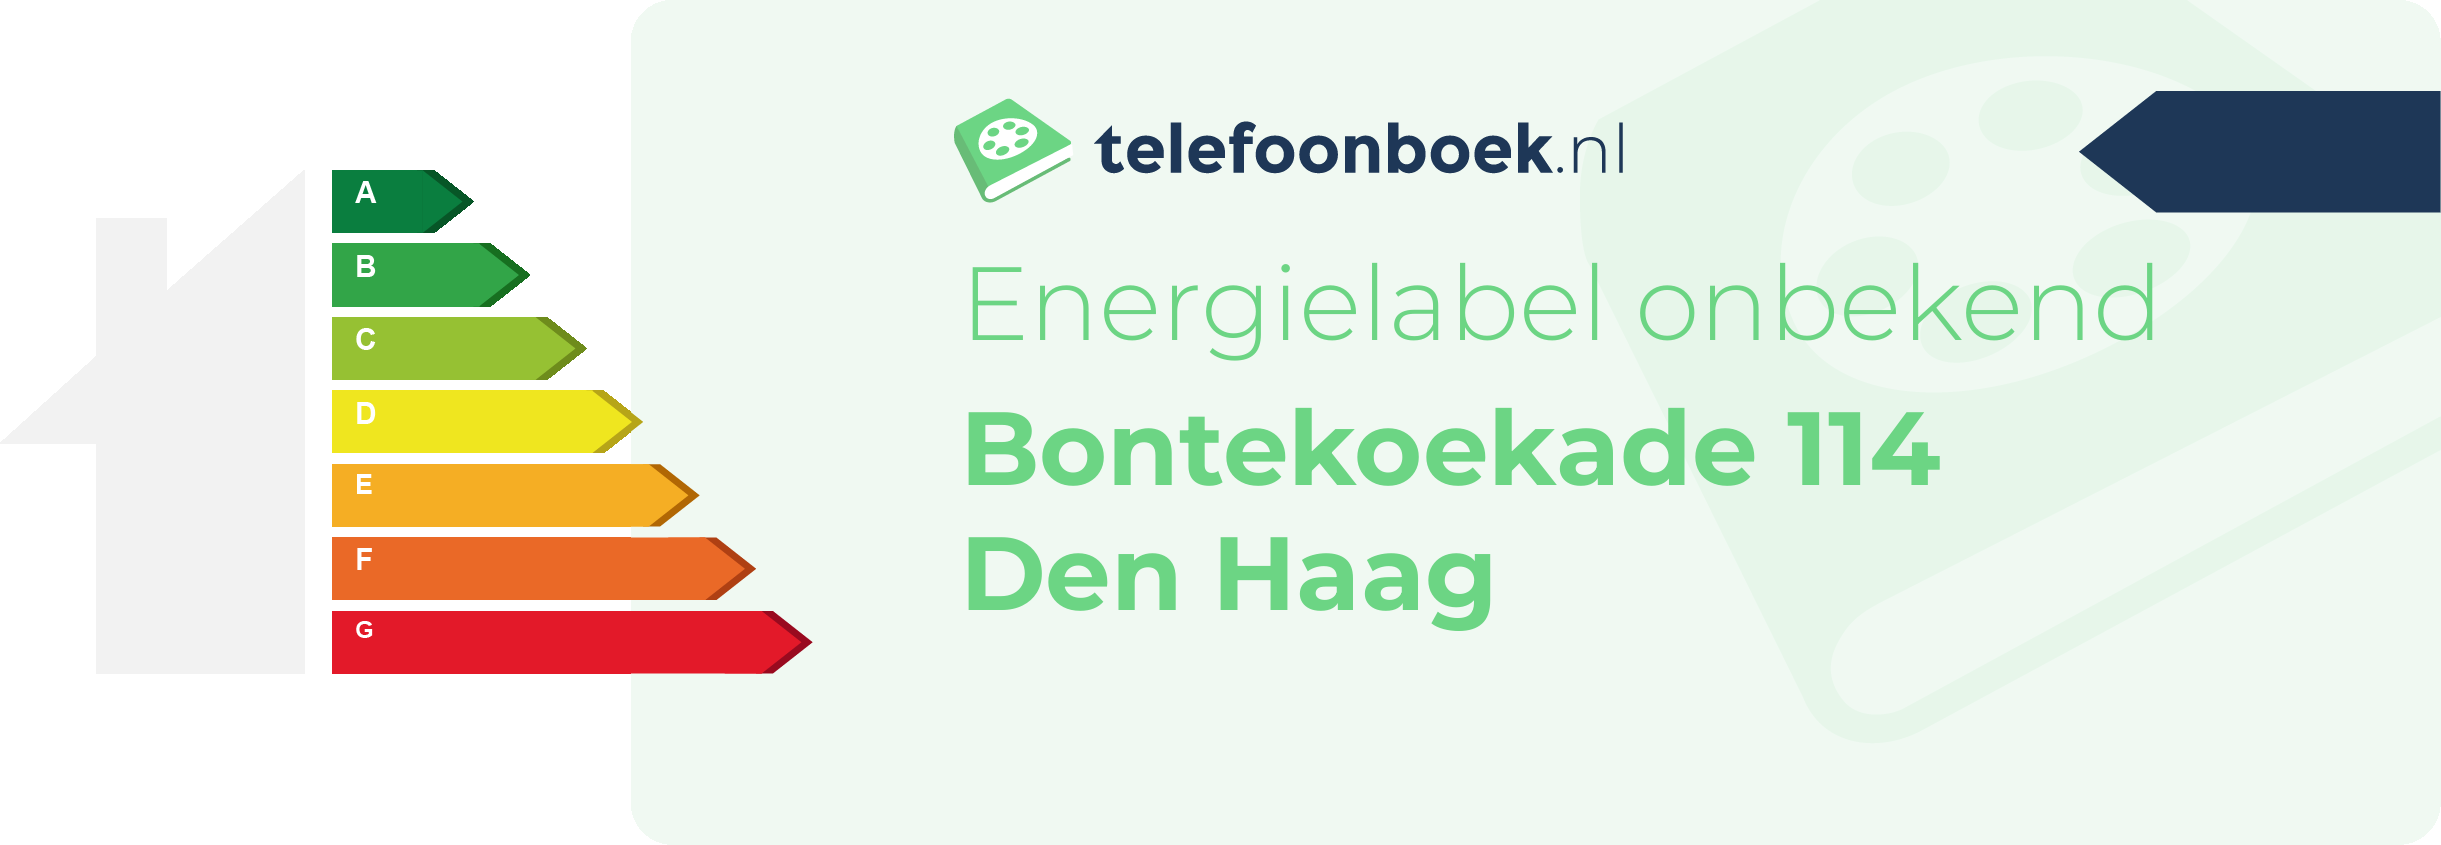 Energielabel Bontekoekade 114 Den Haag